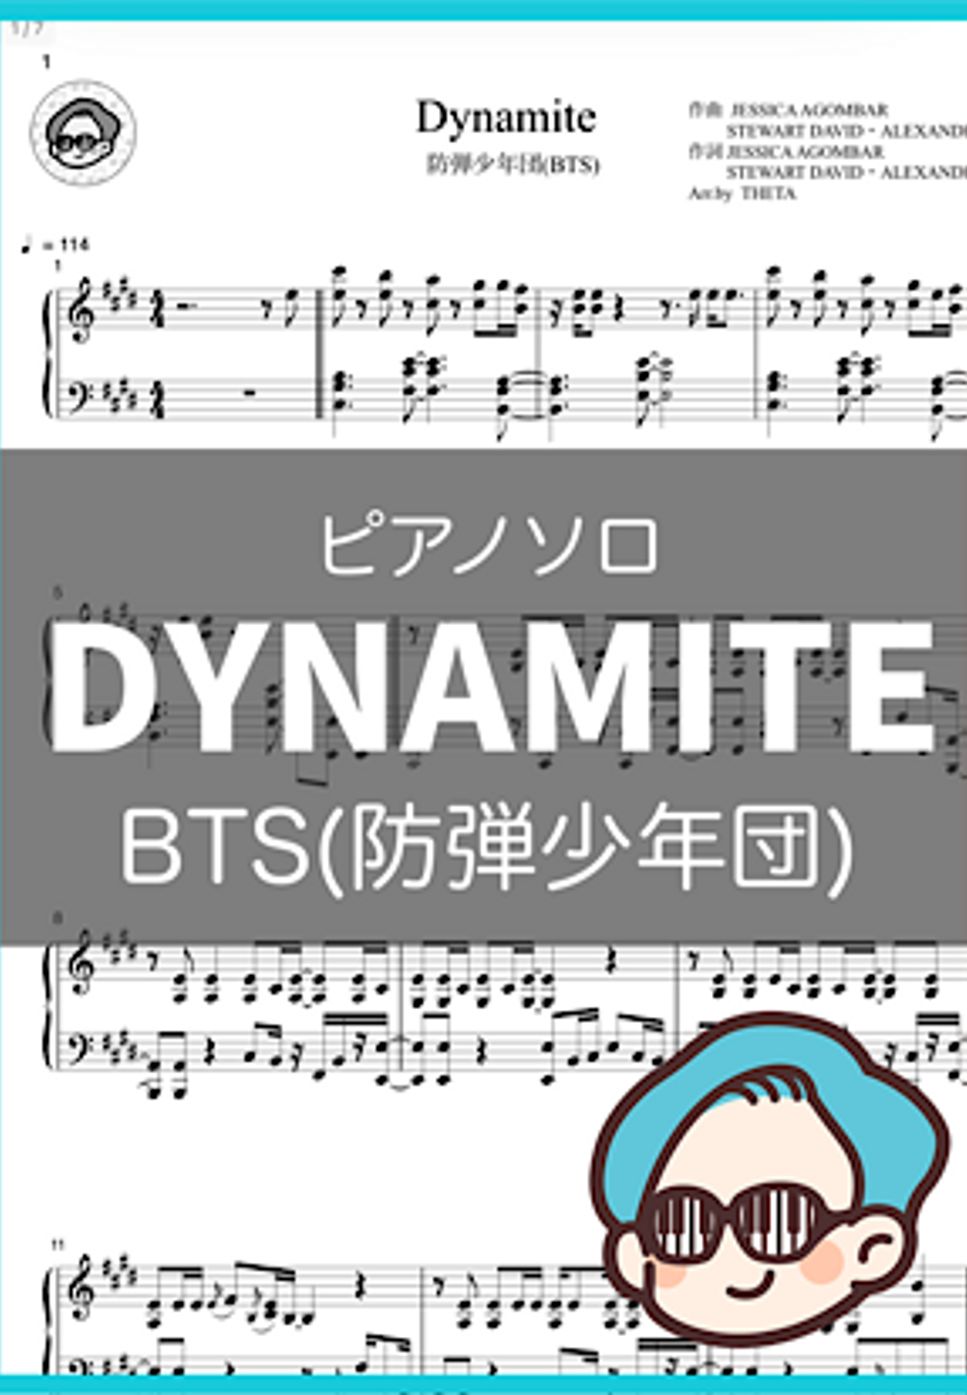 防弾少年団(BTS) - Dynamite by THETA